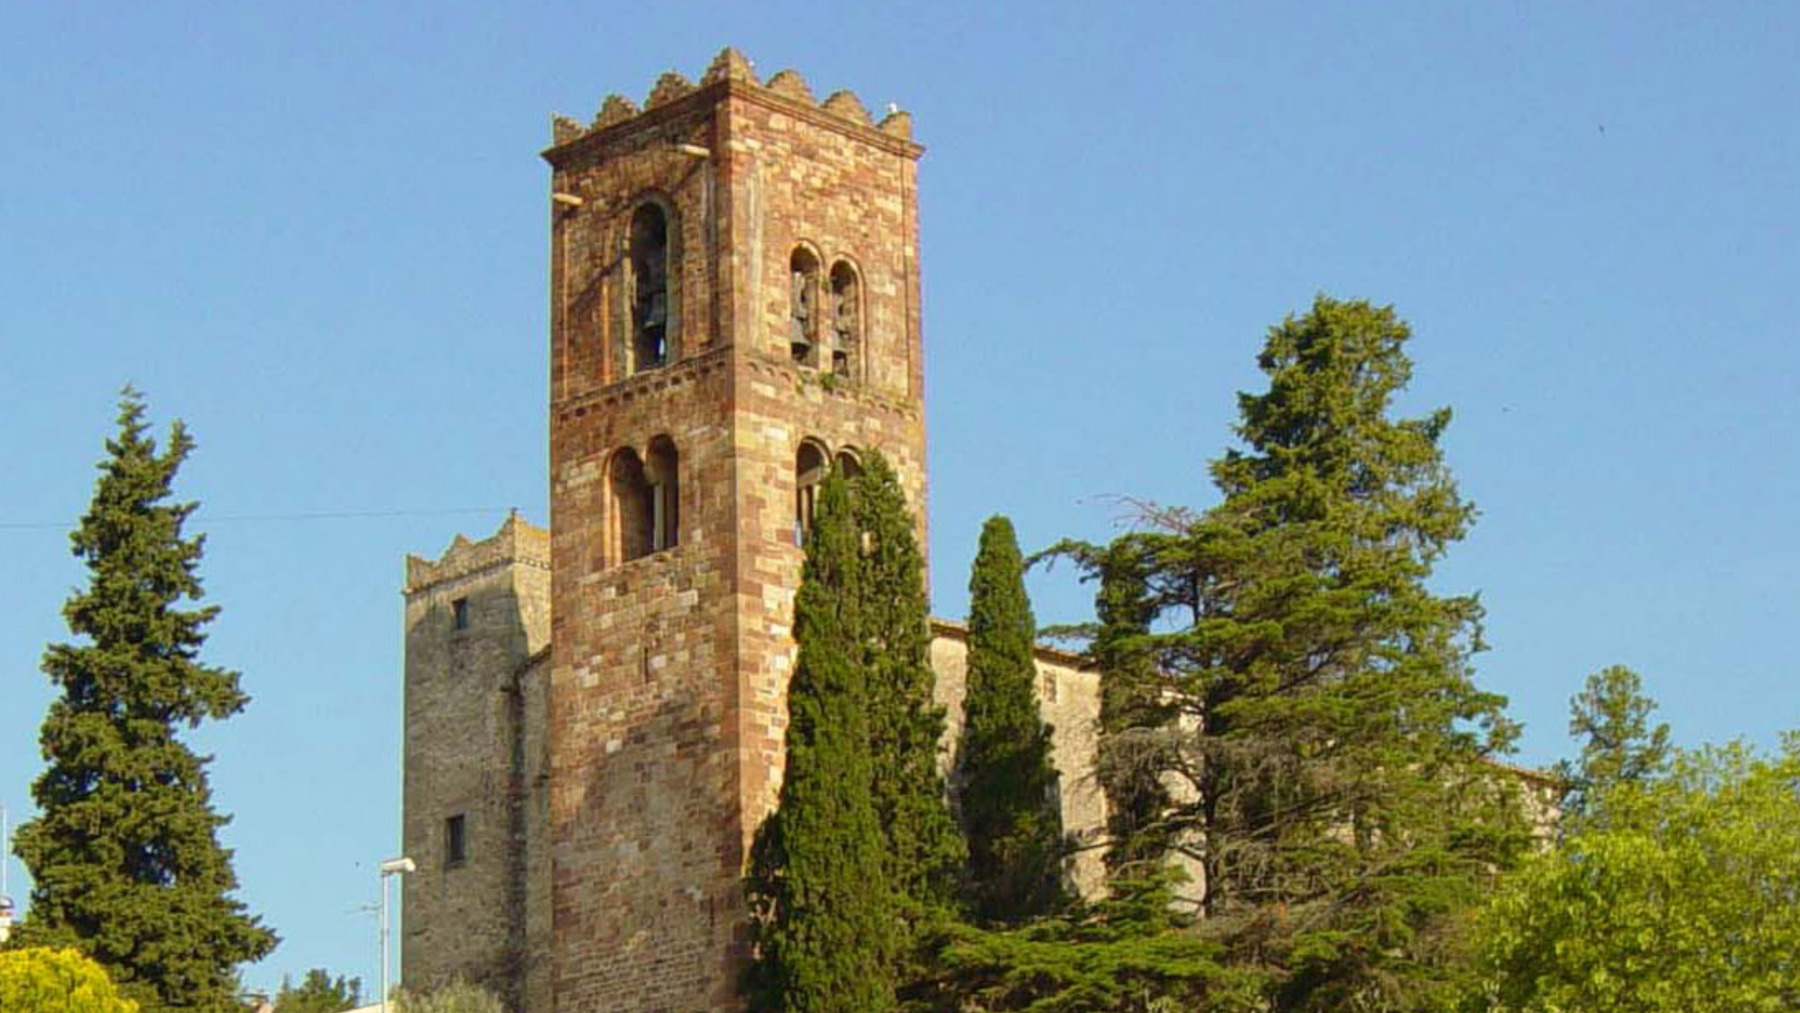 Sant Pere de Vilamajor